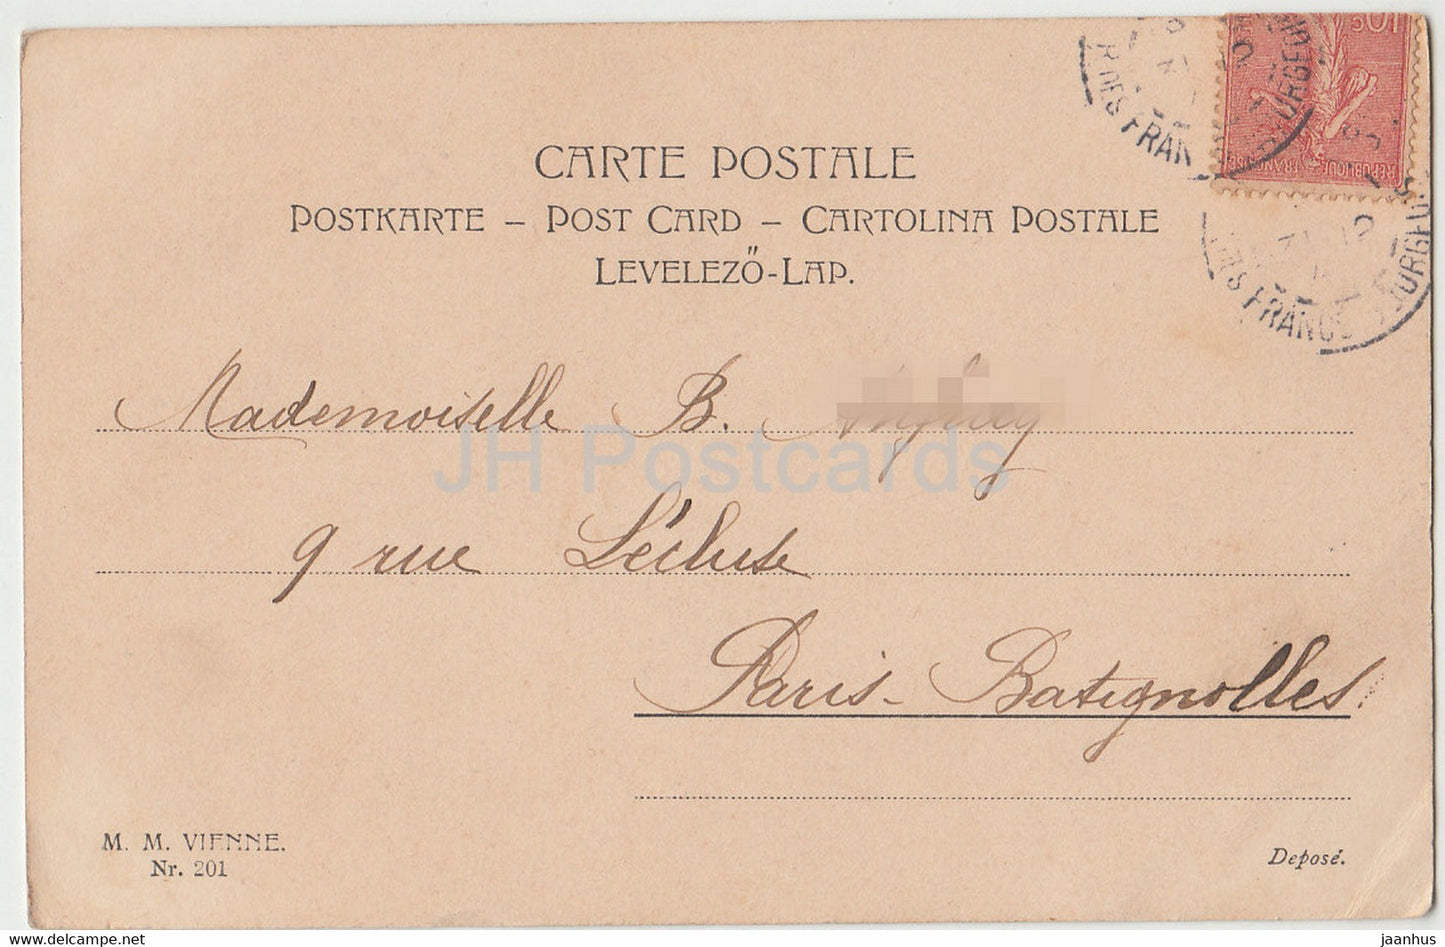 Carte de voeux d'anniversaire - Bonne et Heureuse Annee - fleurs - 201 - MM Vienne - carte postale ancienne 1904 - France - utilisée